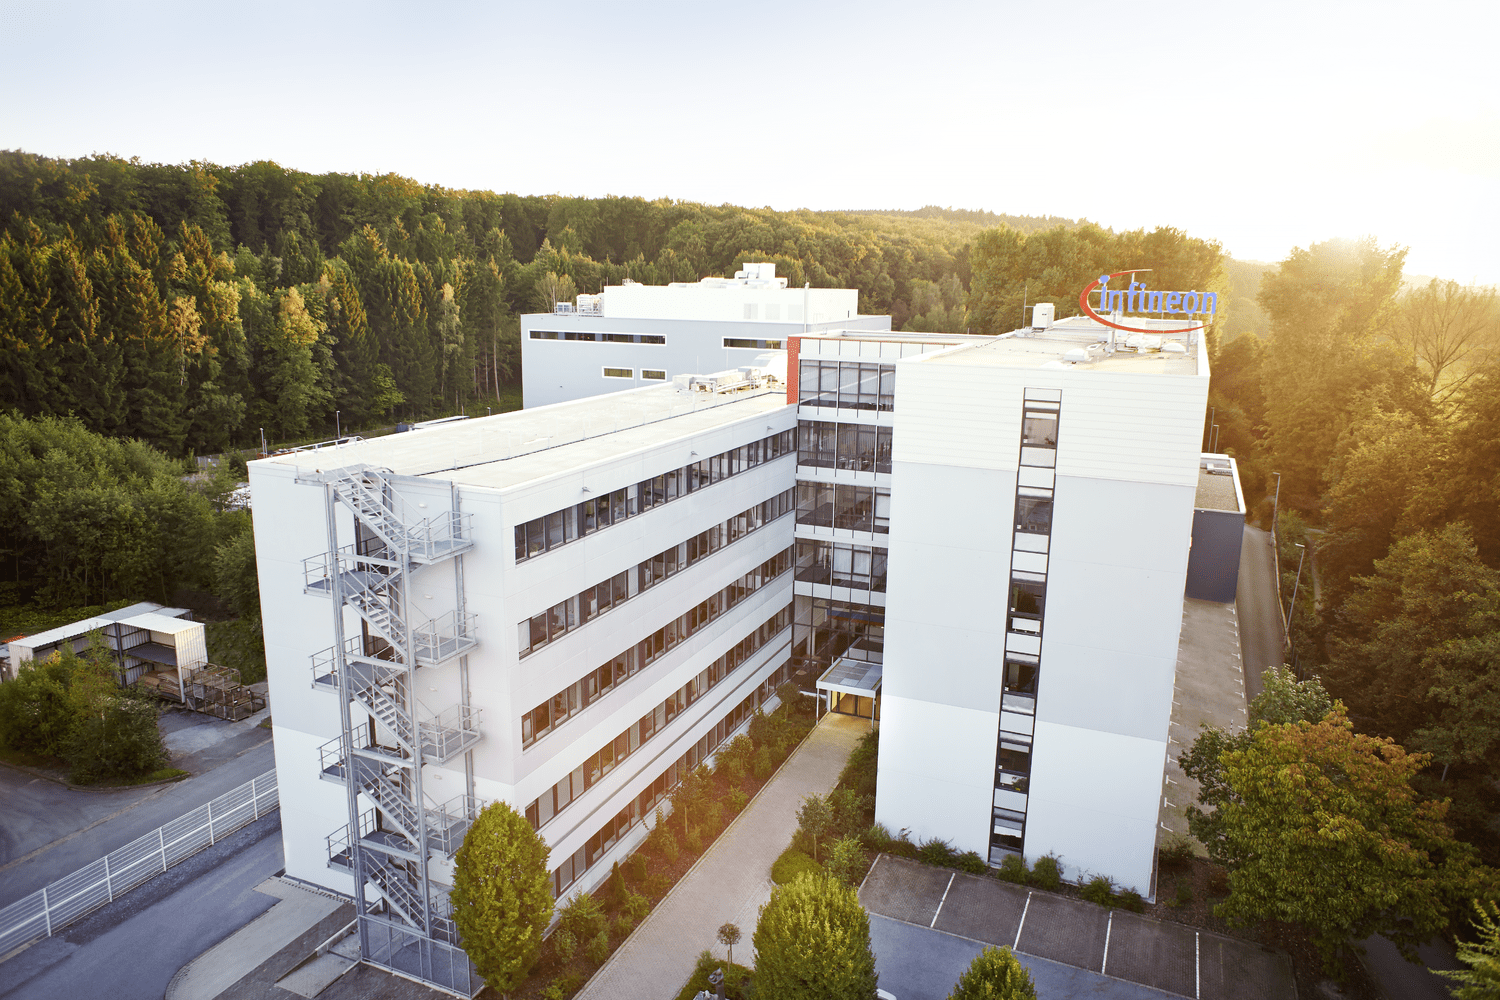 Am 22. November 2022 ist in Warstein die Infineon Technologies AG der Gastgeber - Foto Infineon Technologies AG